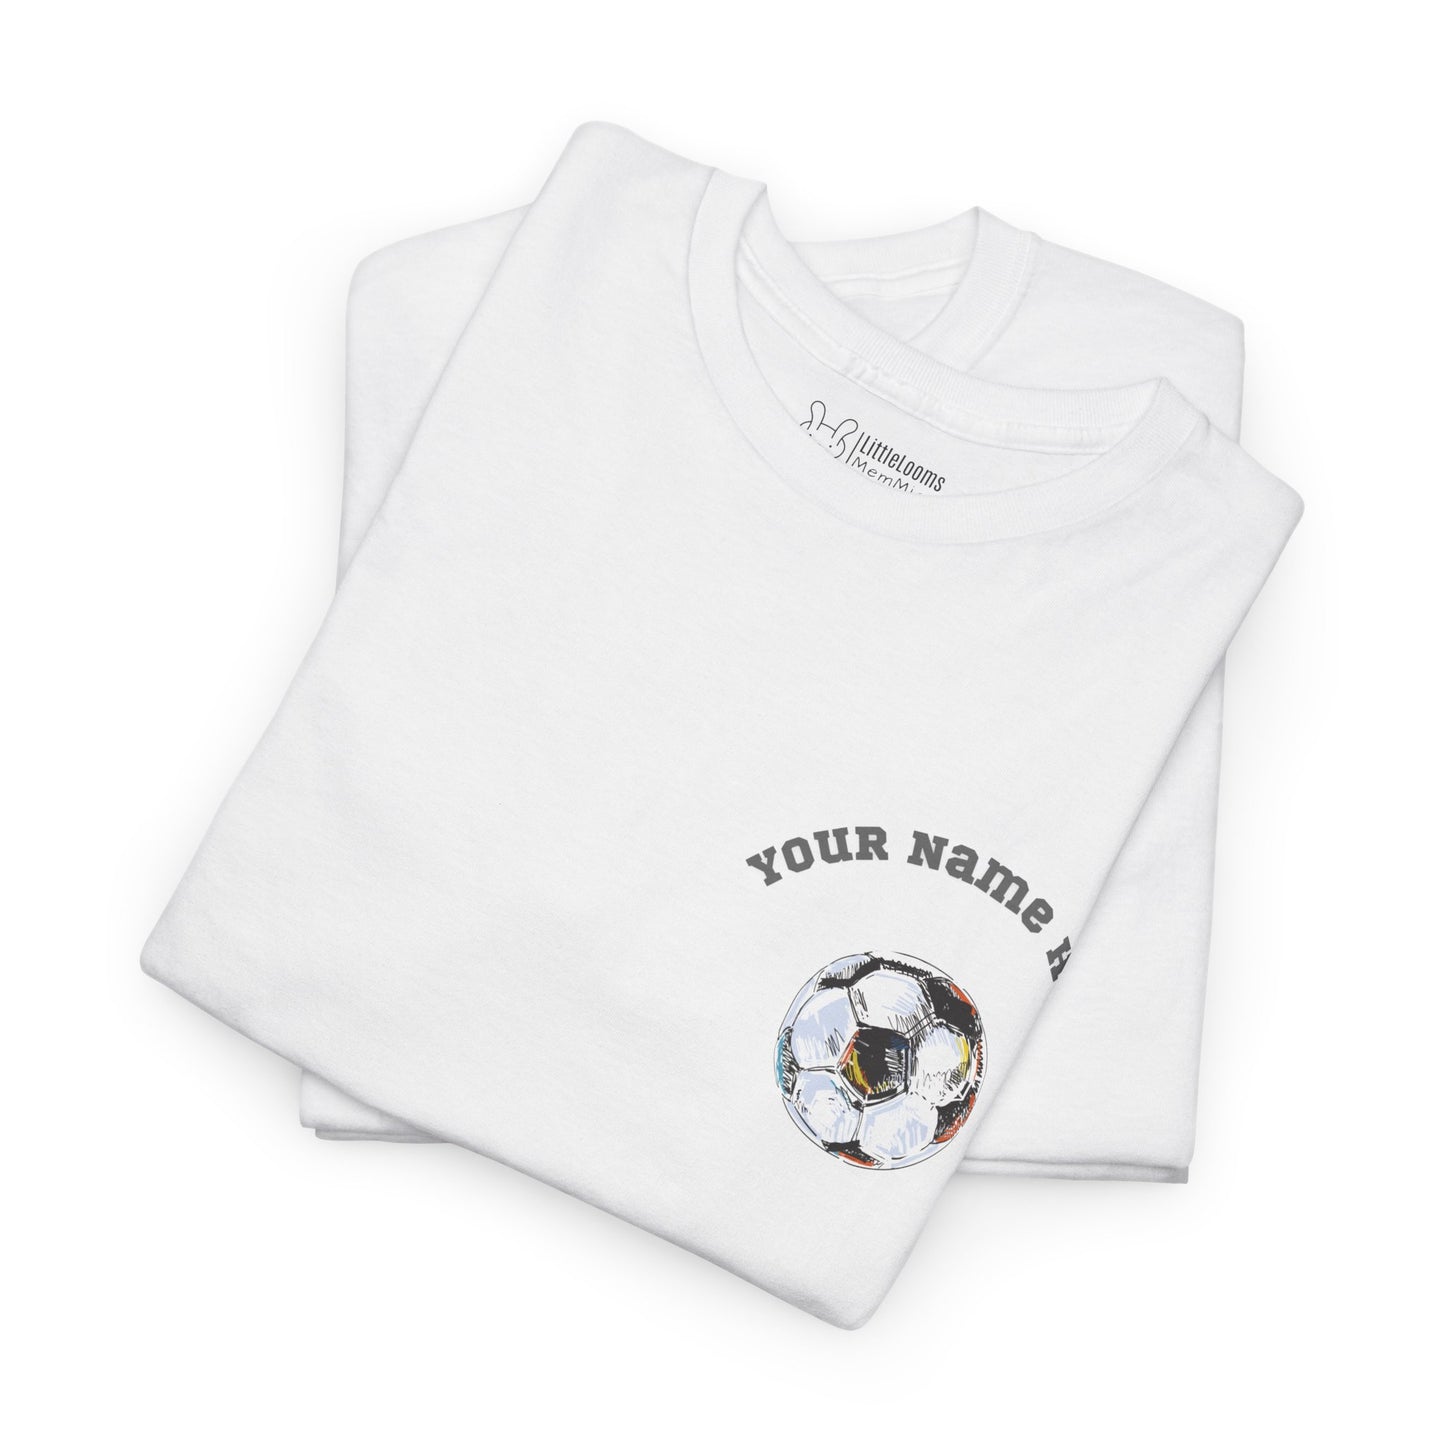 Anpassbares Kurzarm-Unisex-T-Shirt. Fultbo-Balldesign und zur Personalisierung mit einem Namen.